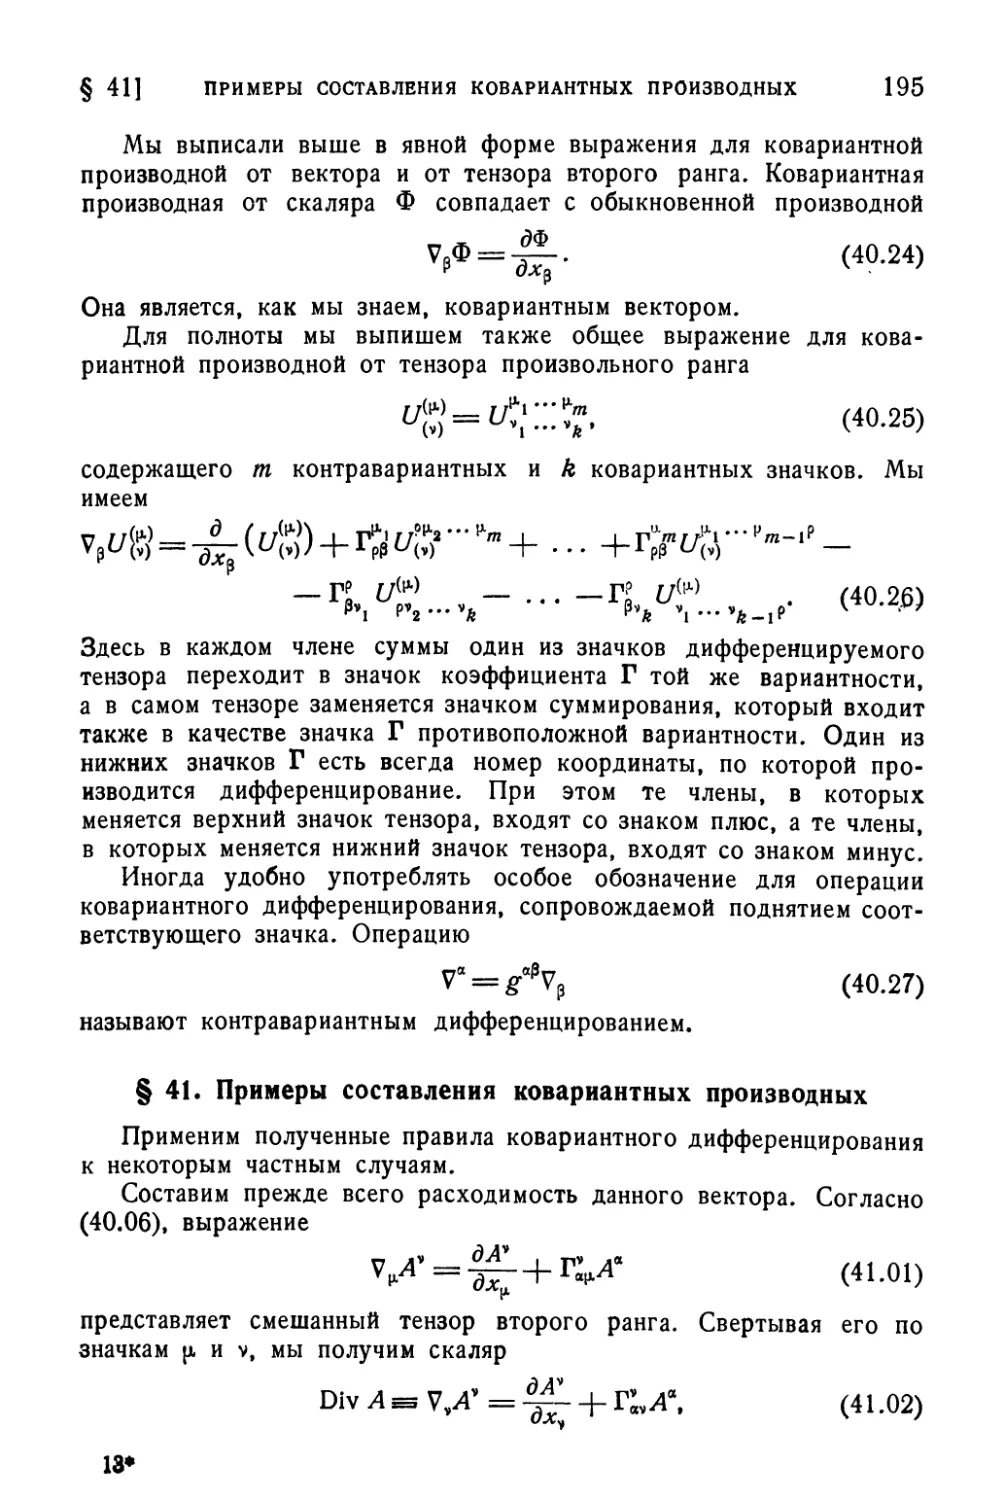 § 41. Примеры составления ковариантных производных